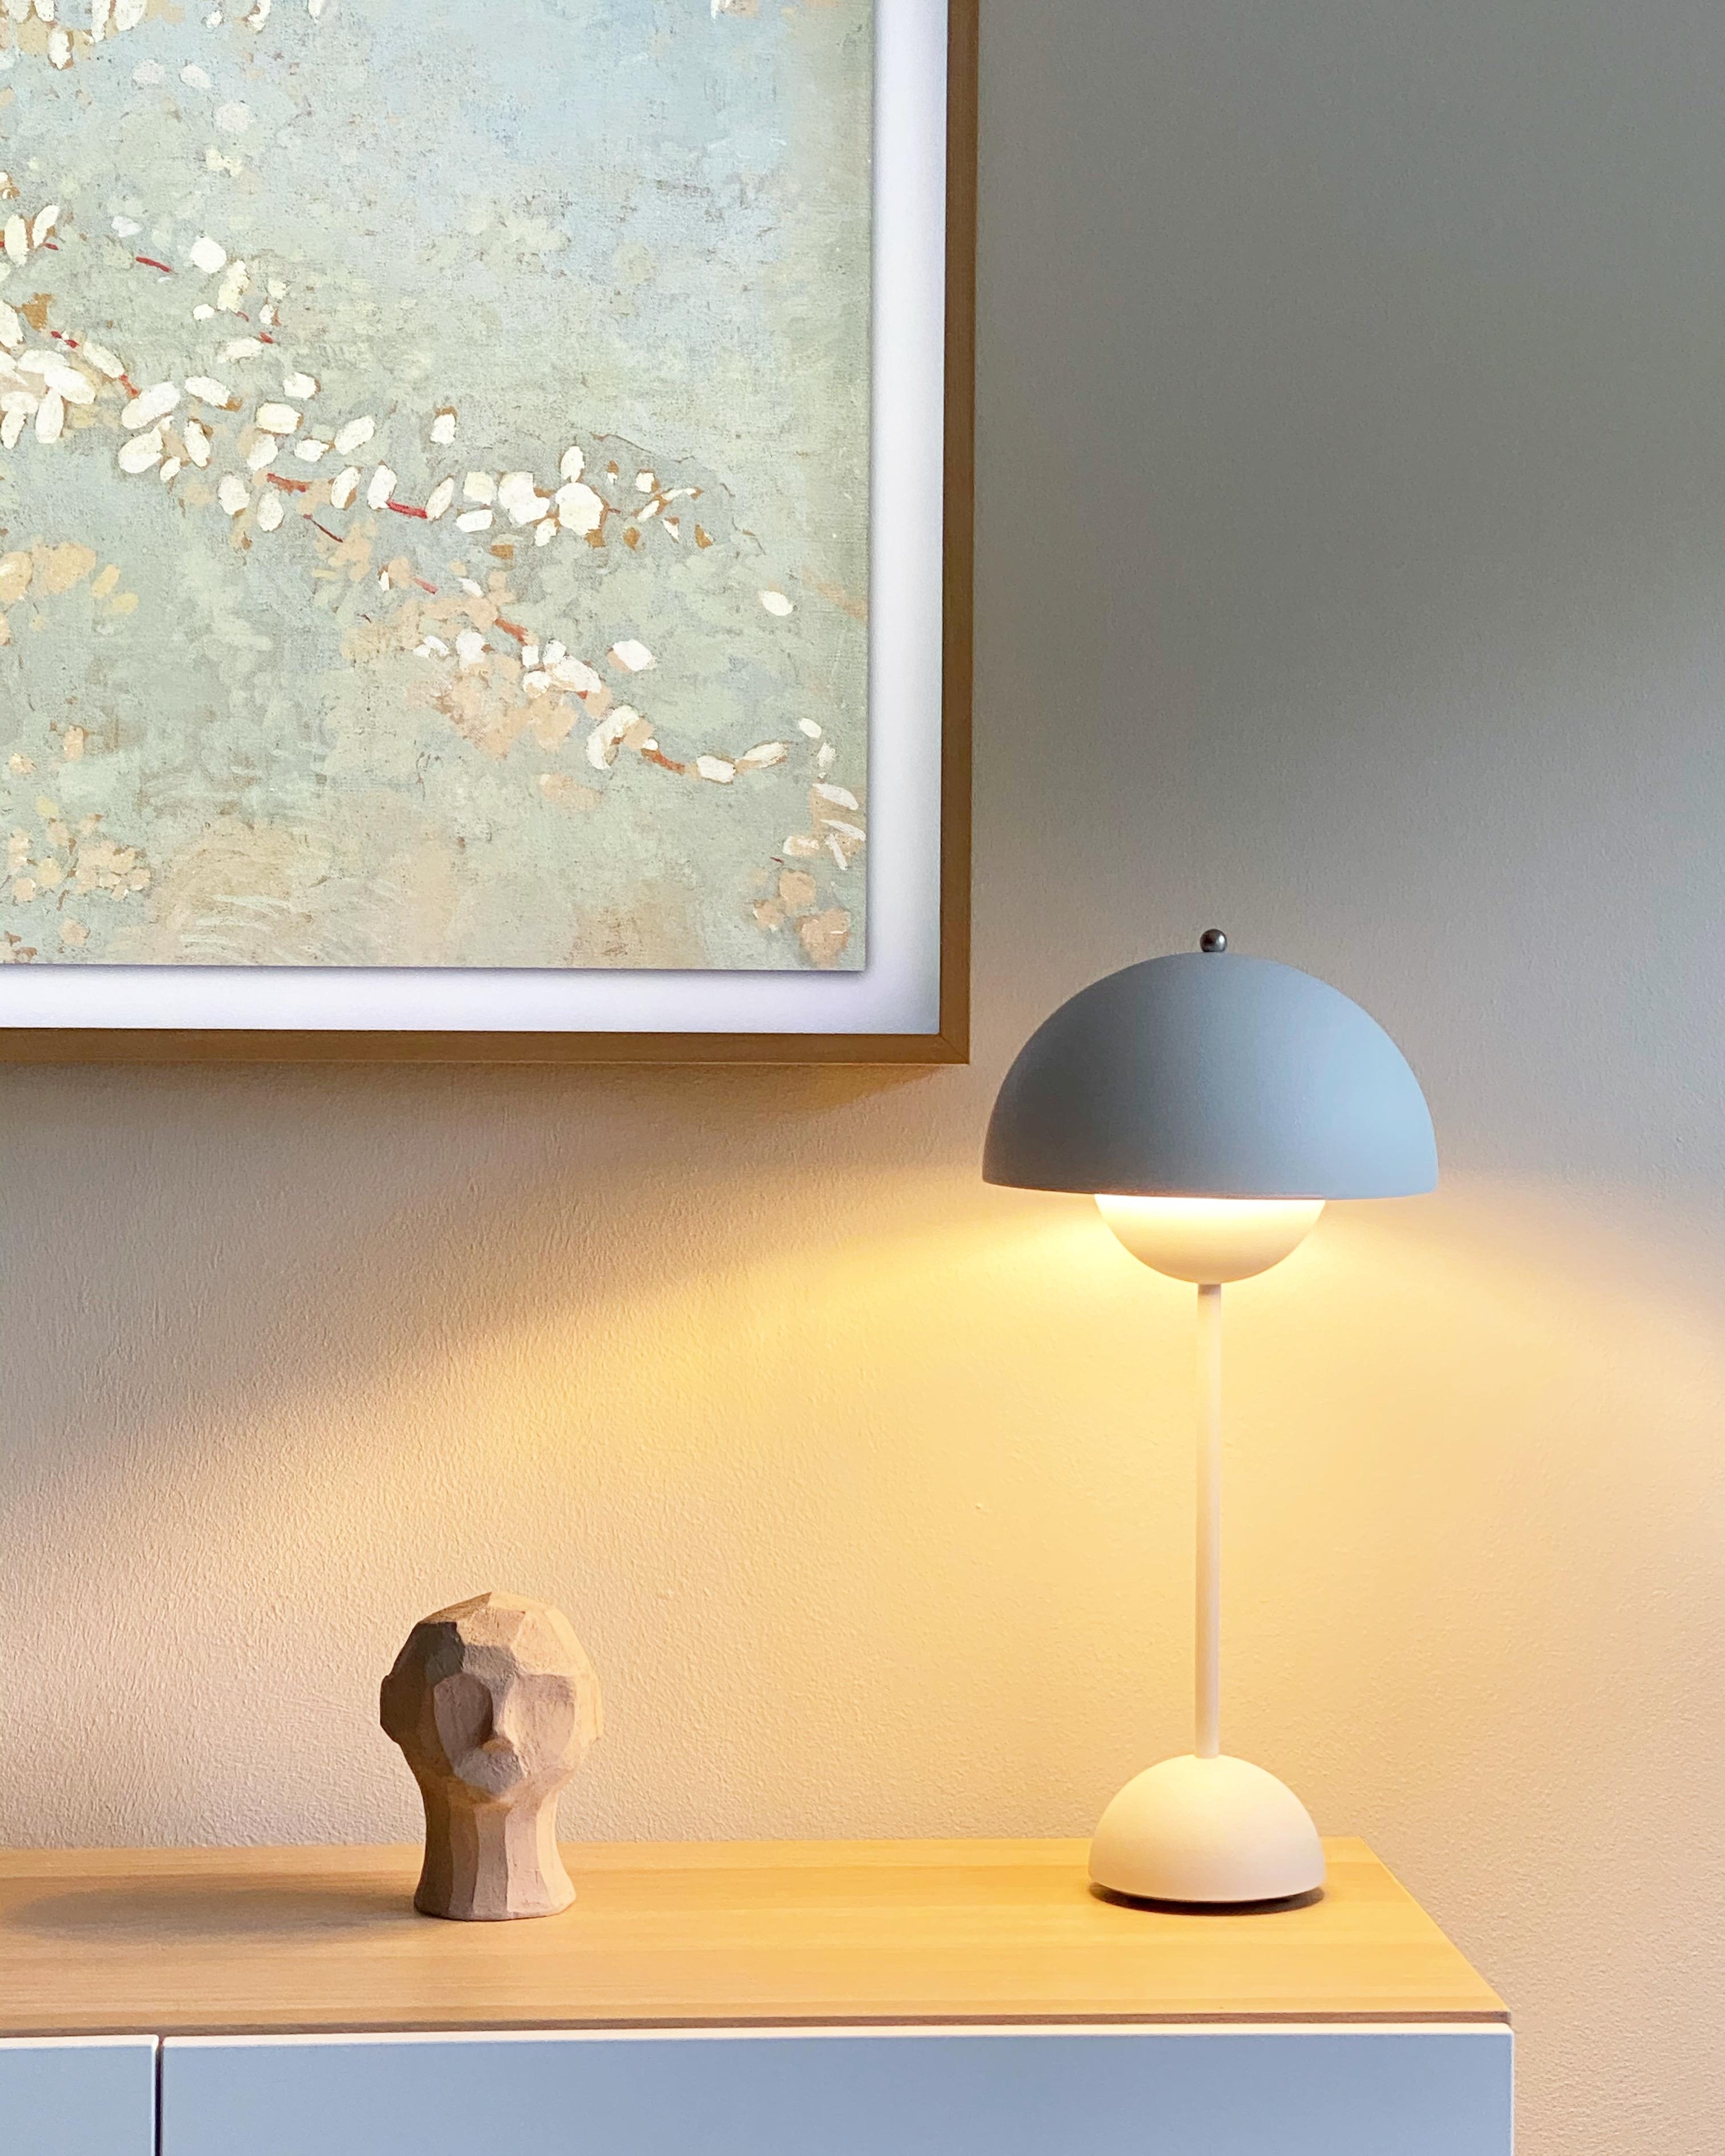 #lampe #lampenliebe #minimalistisch #wohnzimmer #scandistyle